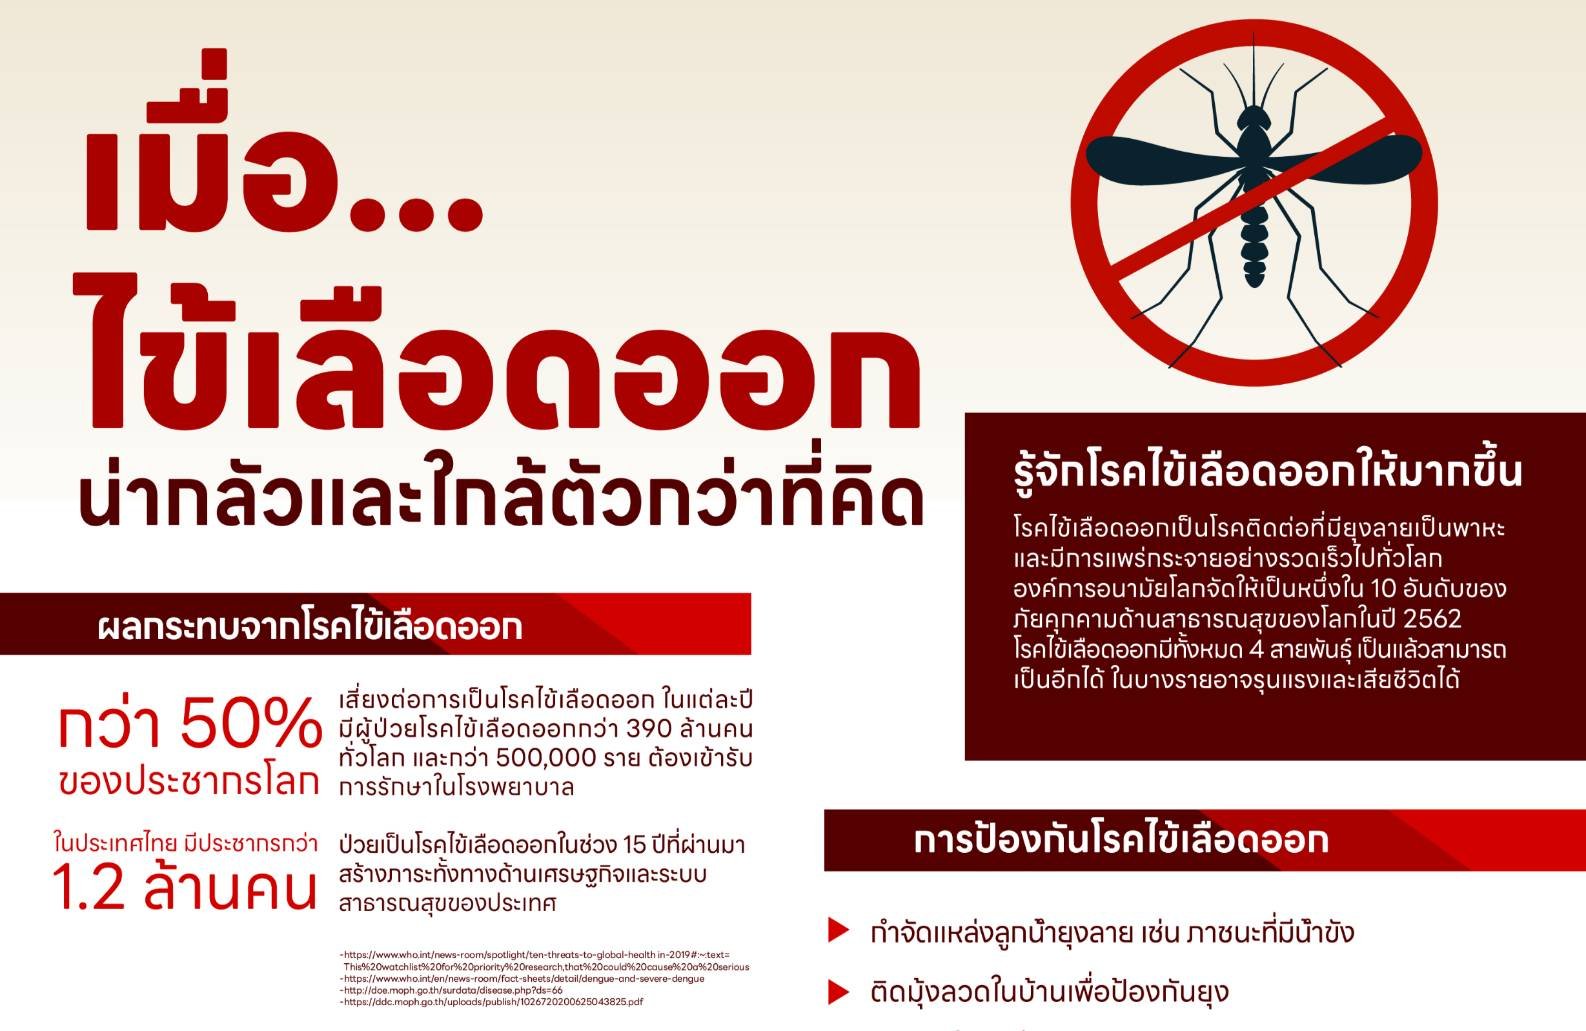 "ทาเคดา" ผนึกพันธมิตร Dengue-zero เปิดตัวเว็บไซต์ www.KnowDengueTH.com ให้ความรู้โรคไข้เลือดออก